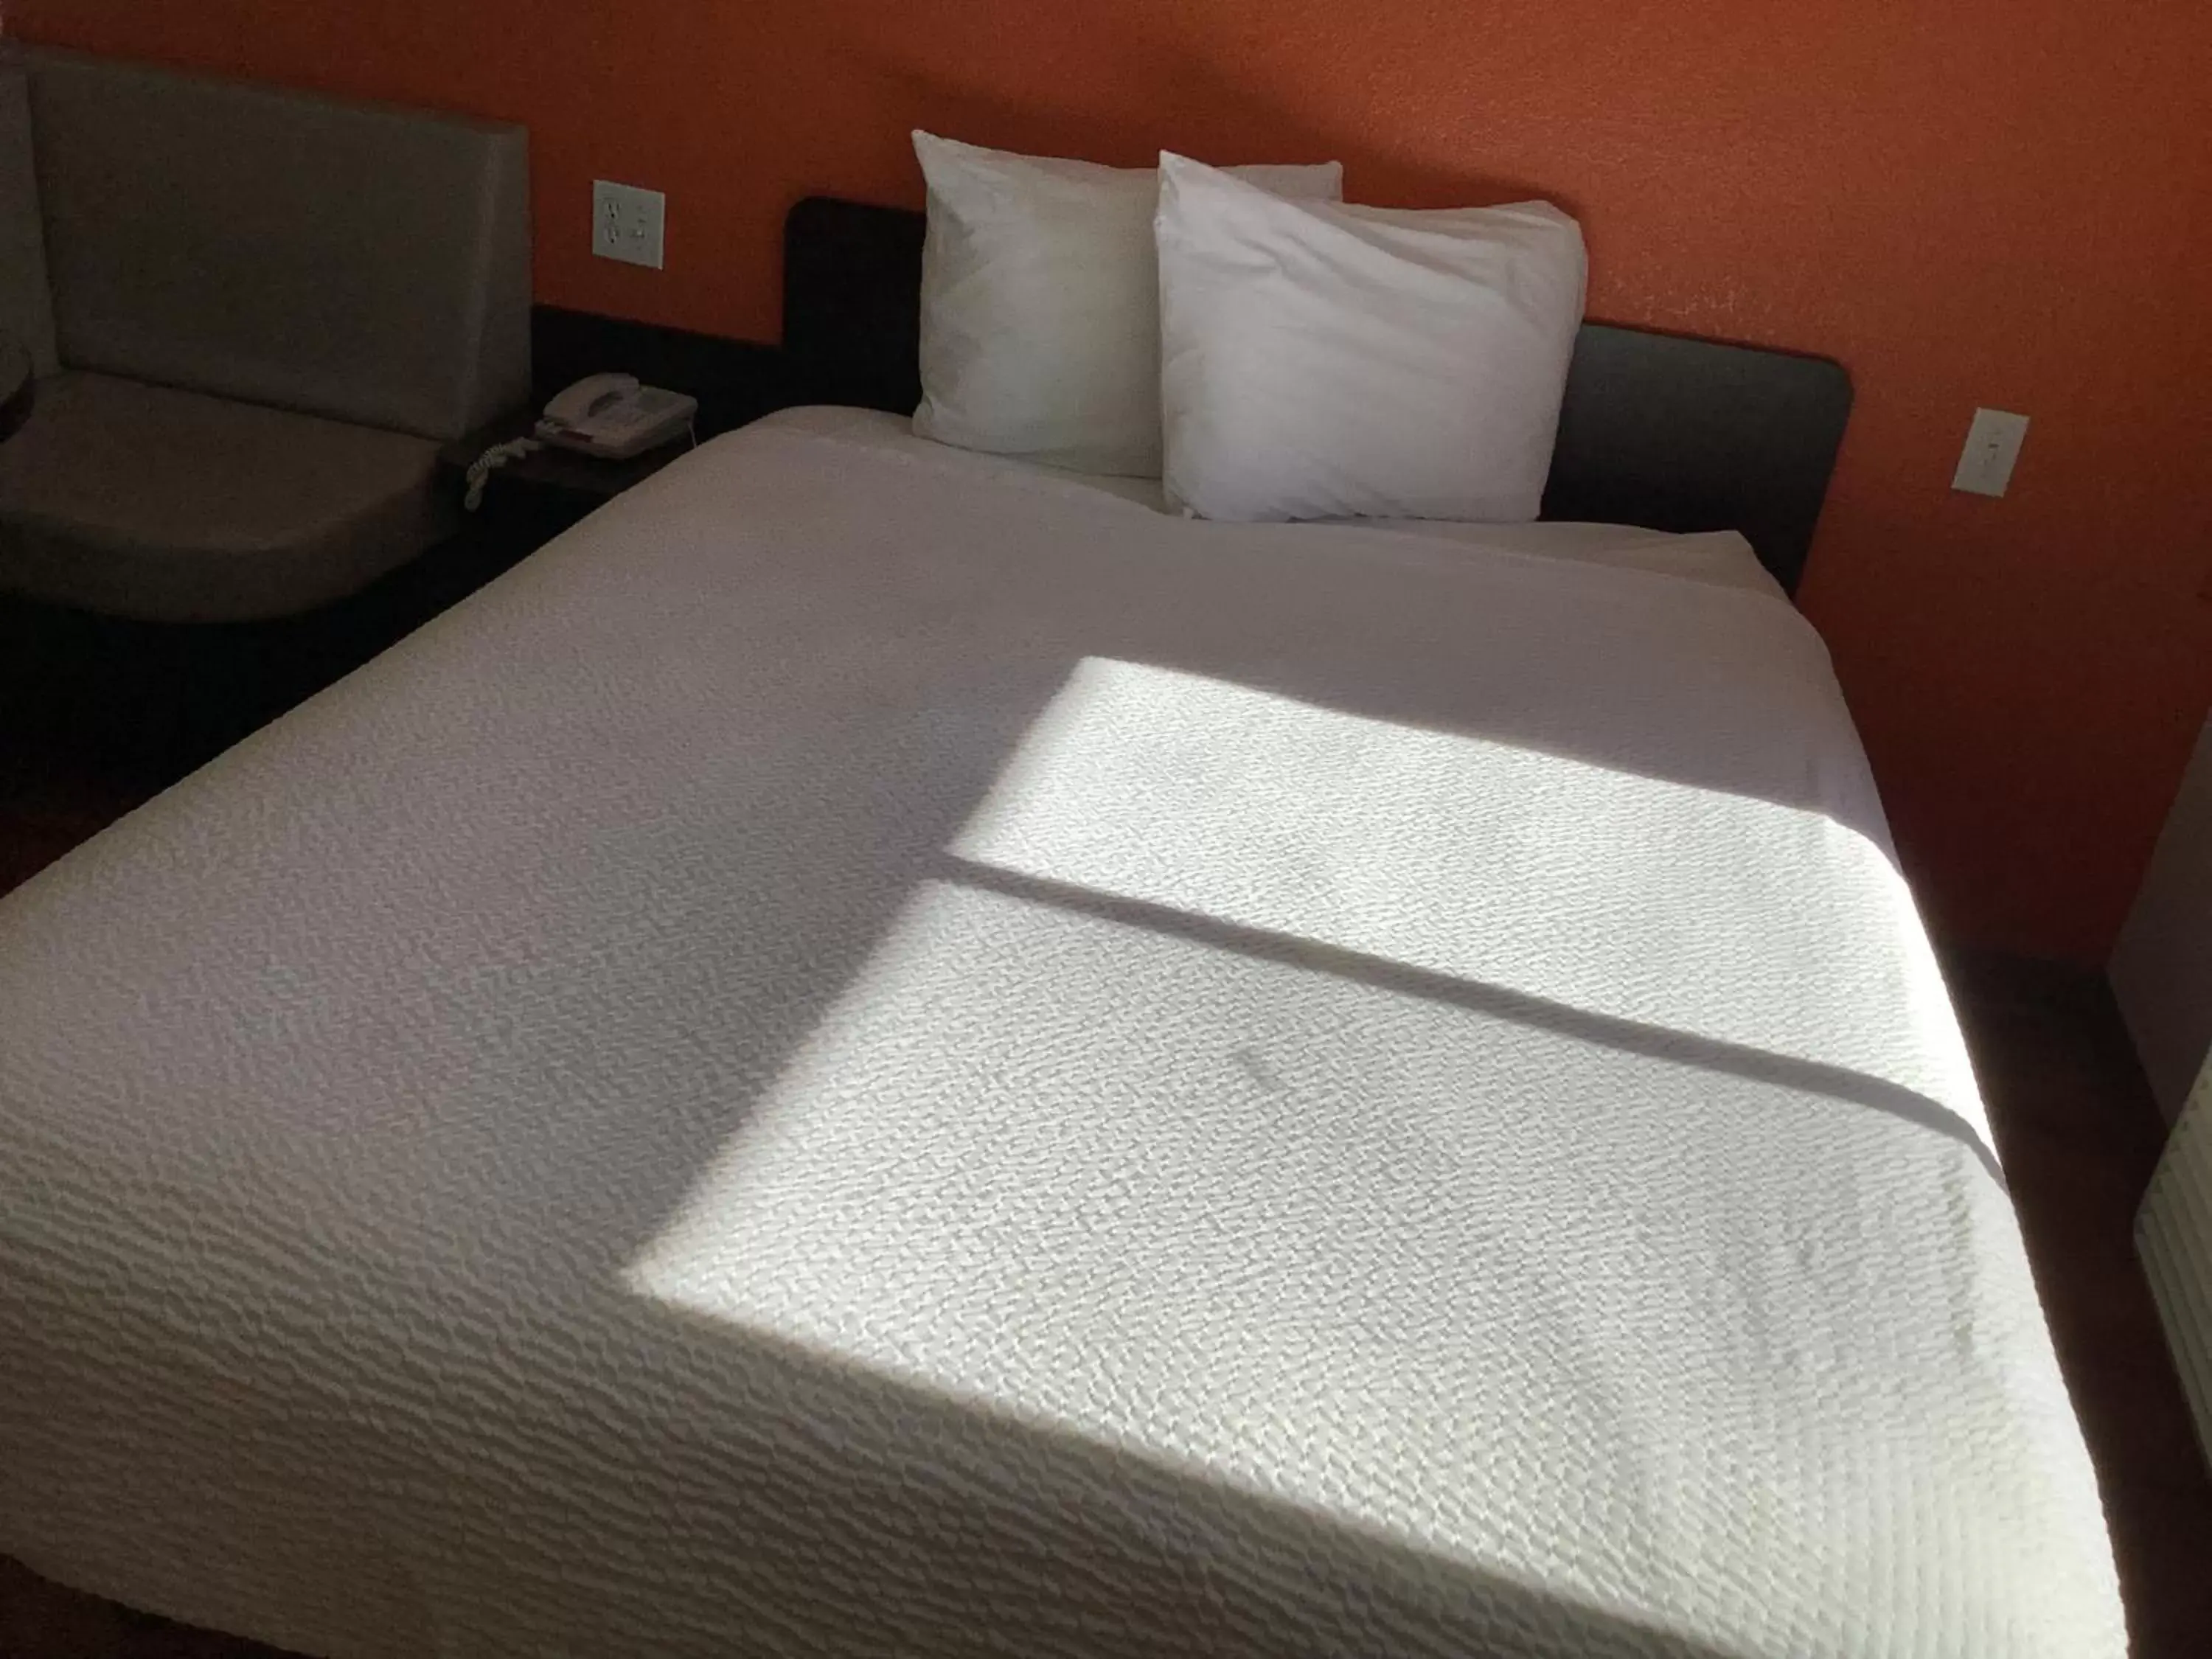 Bed in Carlsbad Village Inn